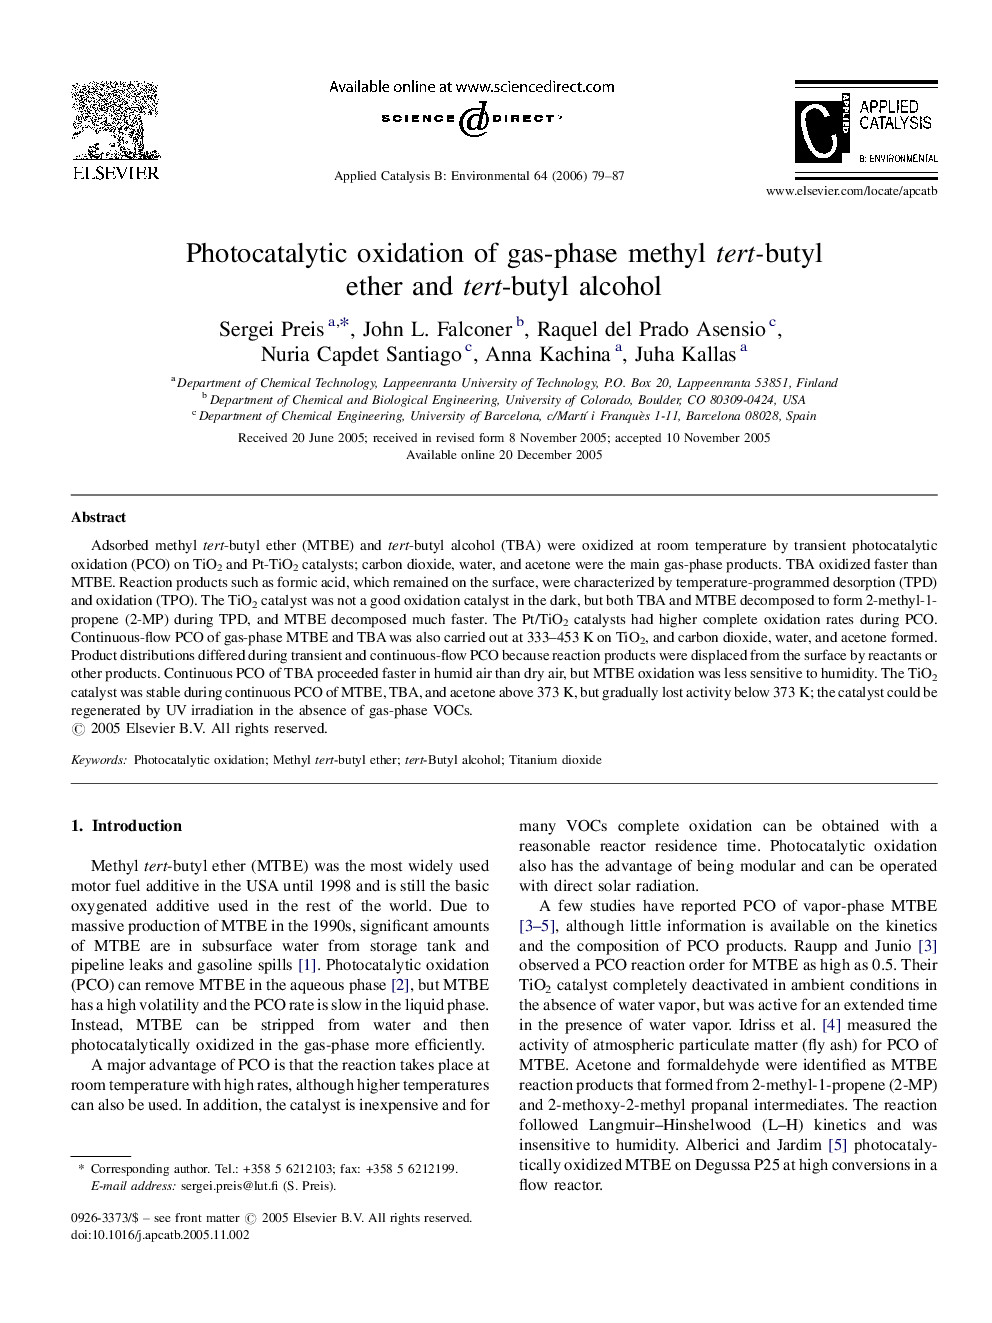 Photocatalytic oxidation of gas-phase methyl tert-butyl ether and tert-butyl alcohol